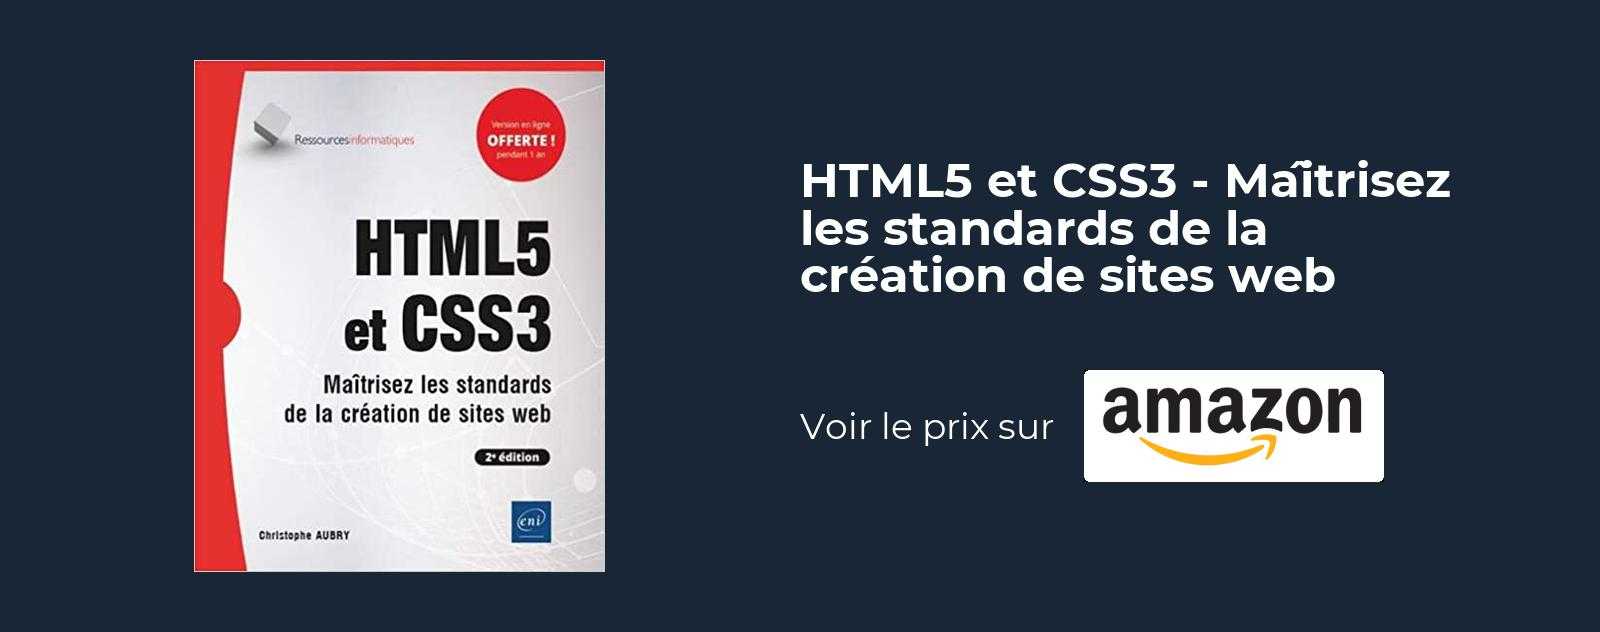 HTML5 et CSS3 - Maîtrisez les standards de la creation de sites web